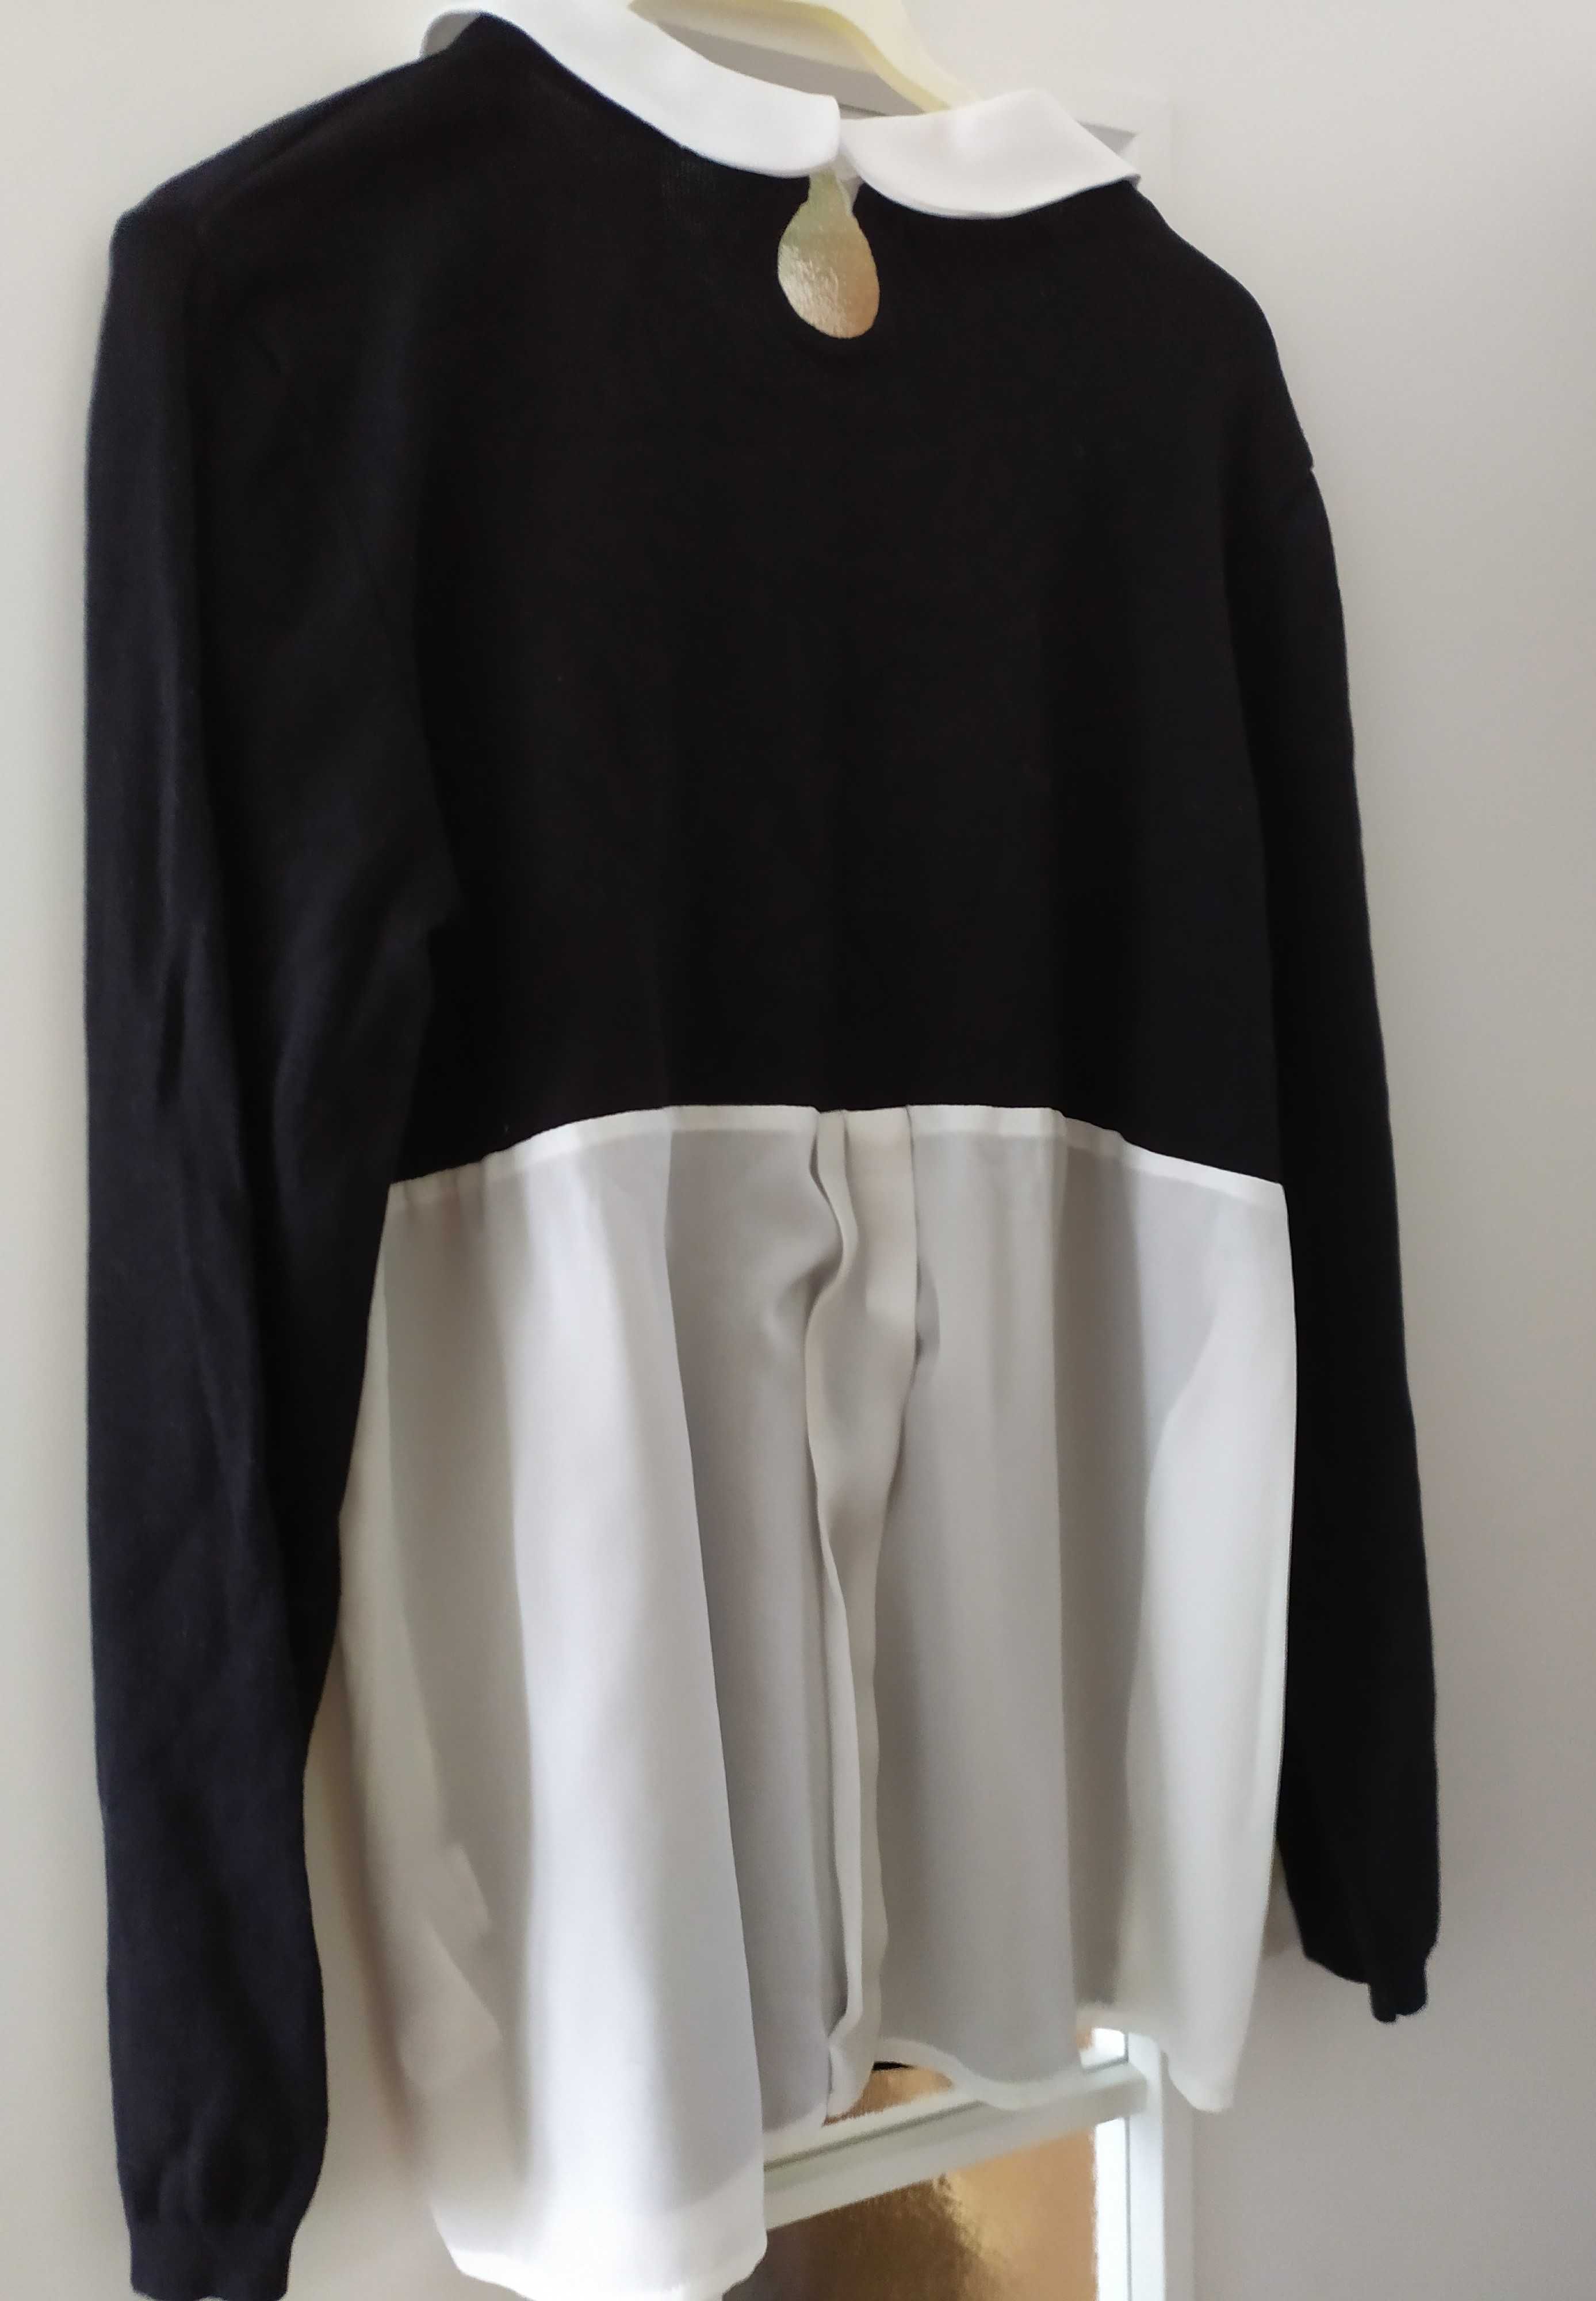 czarny cienki sweterek z białymi dodatkami marka Sheego rozmiar 46